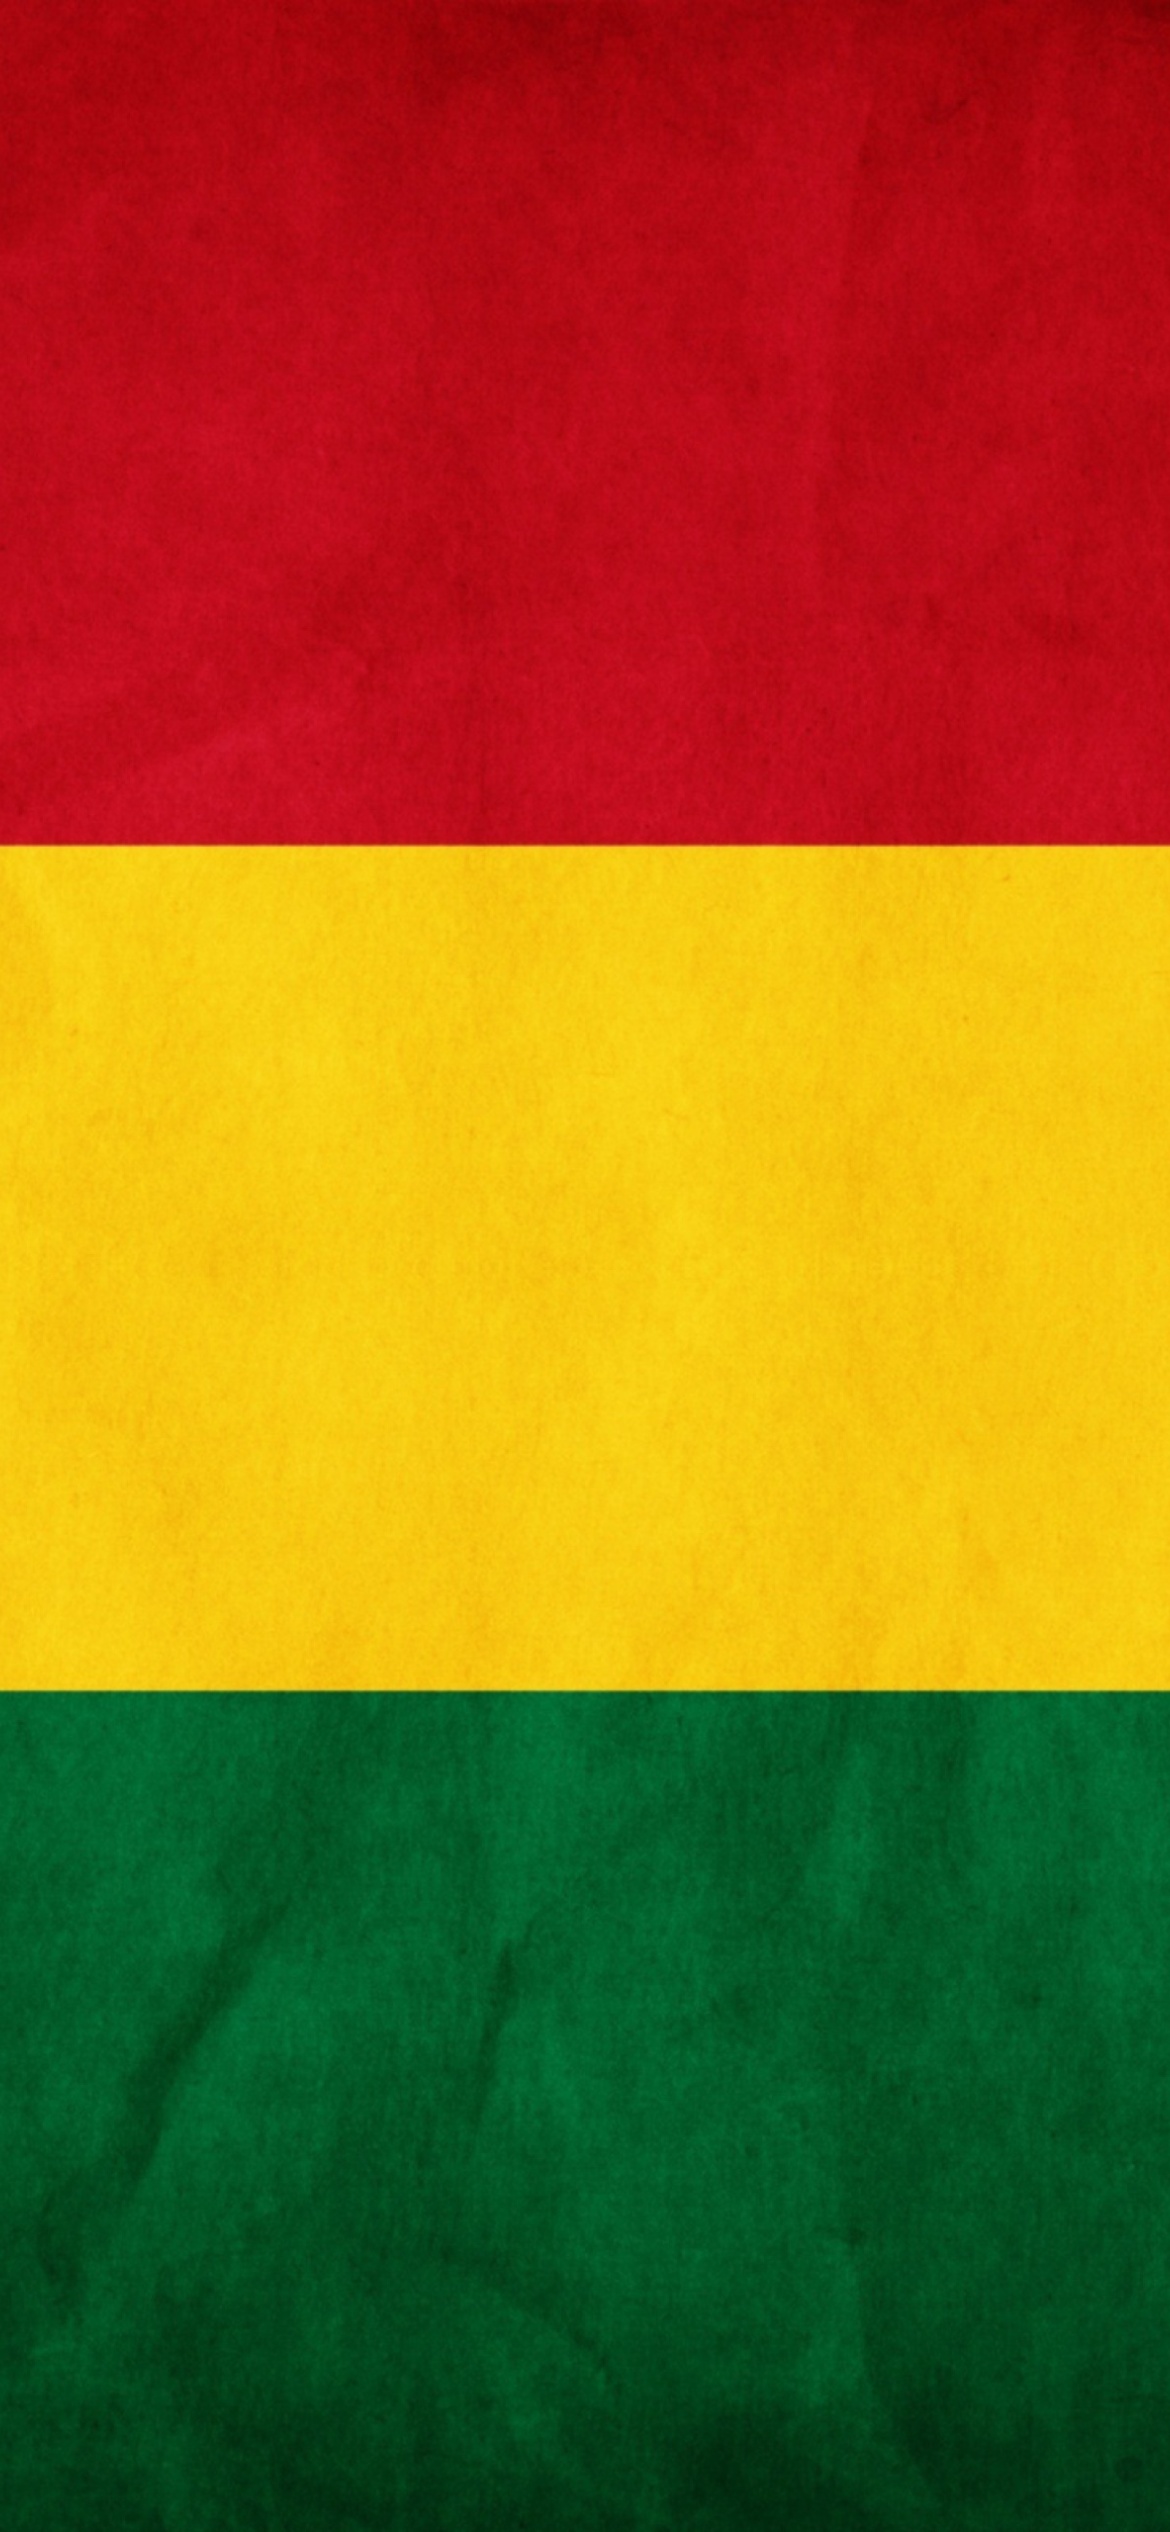 Das Bolivia Flag Wallpaper 1170x2532